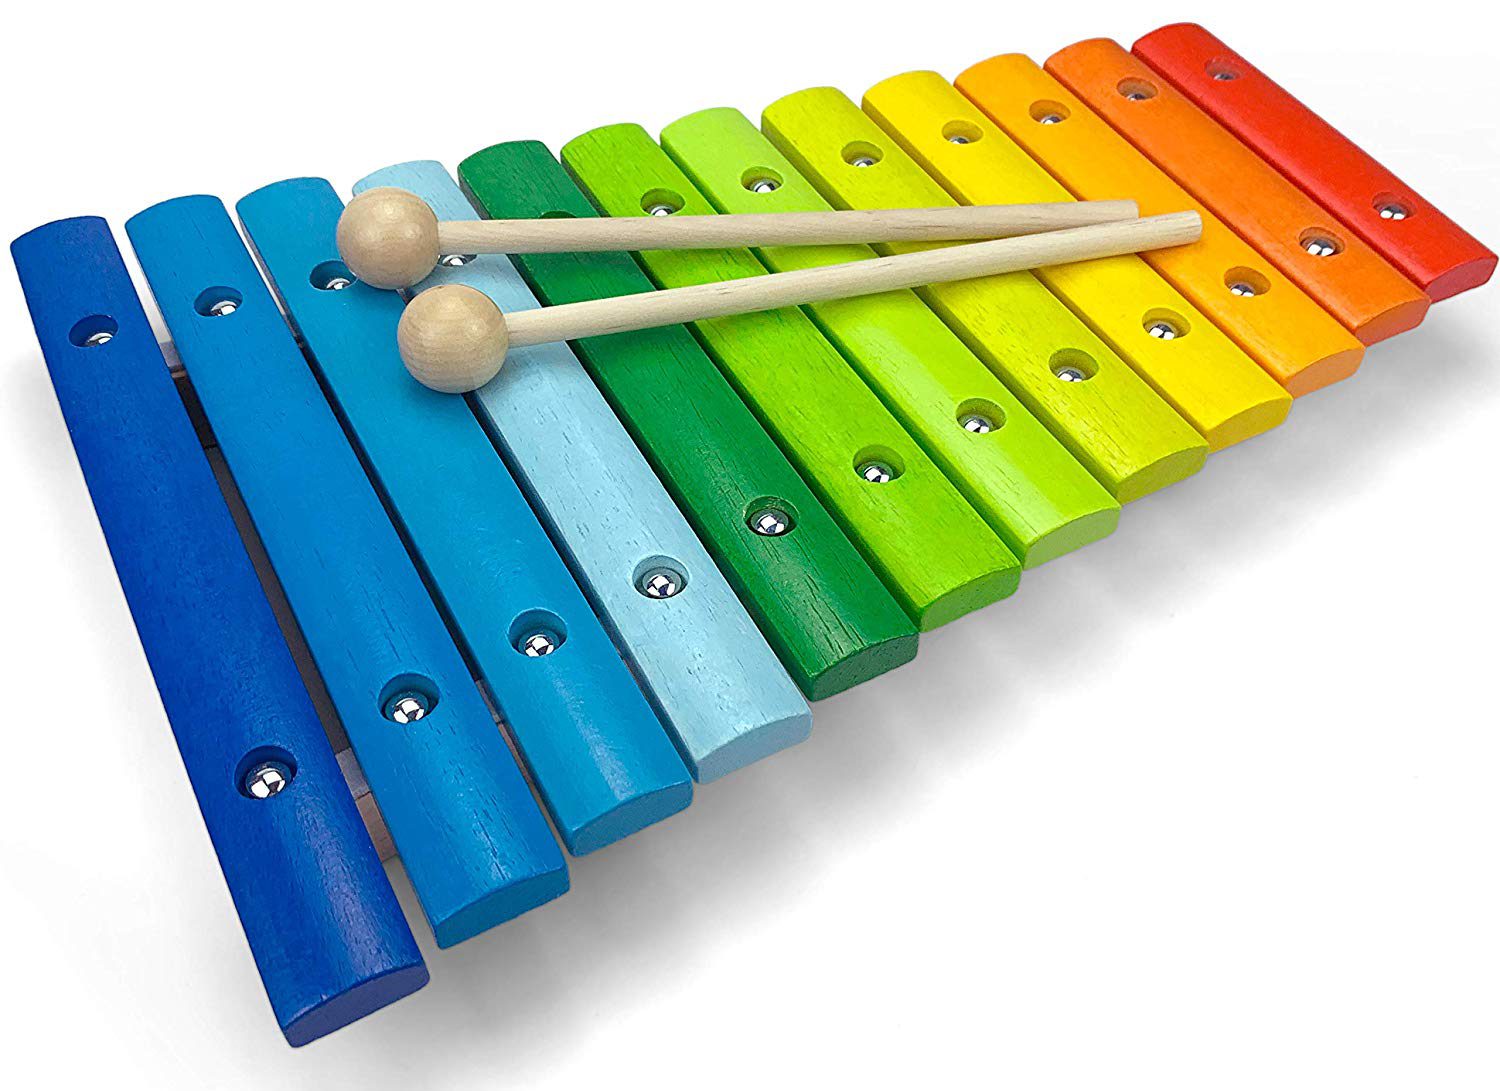 Kinder Xylophon zum Nachziehen Musikinstrumente Baby Musikspielzeug Glockenspiel 